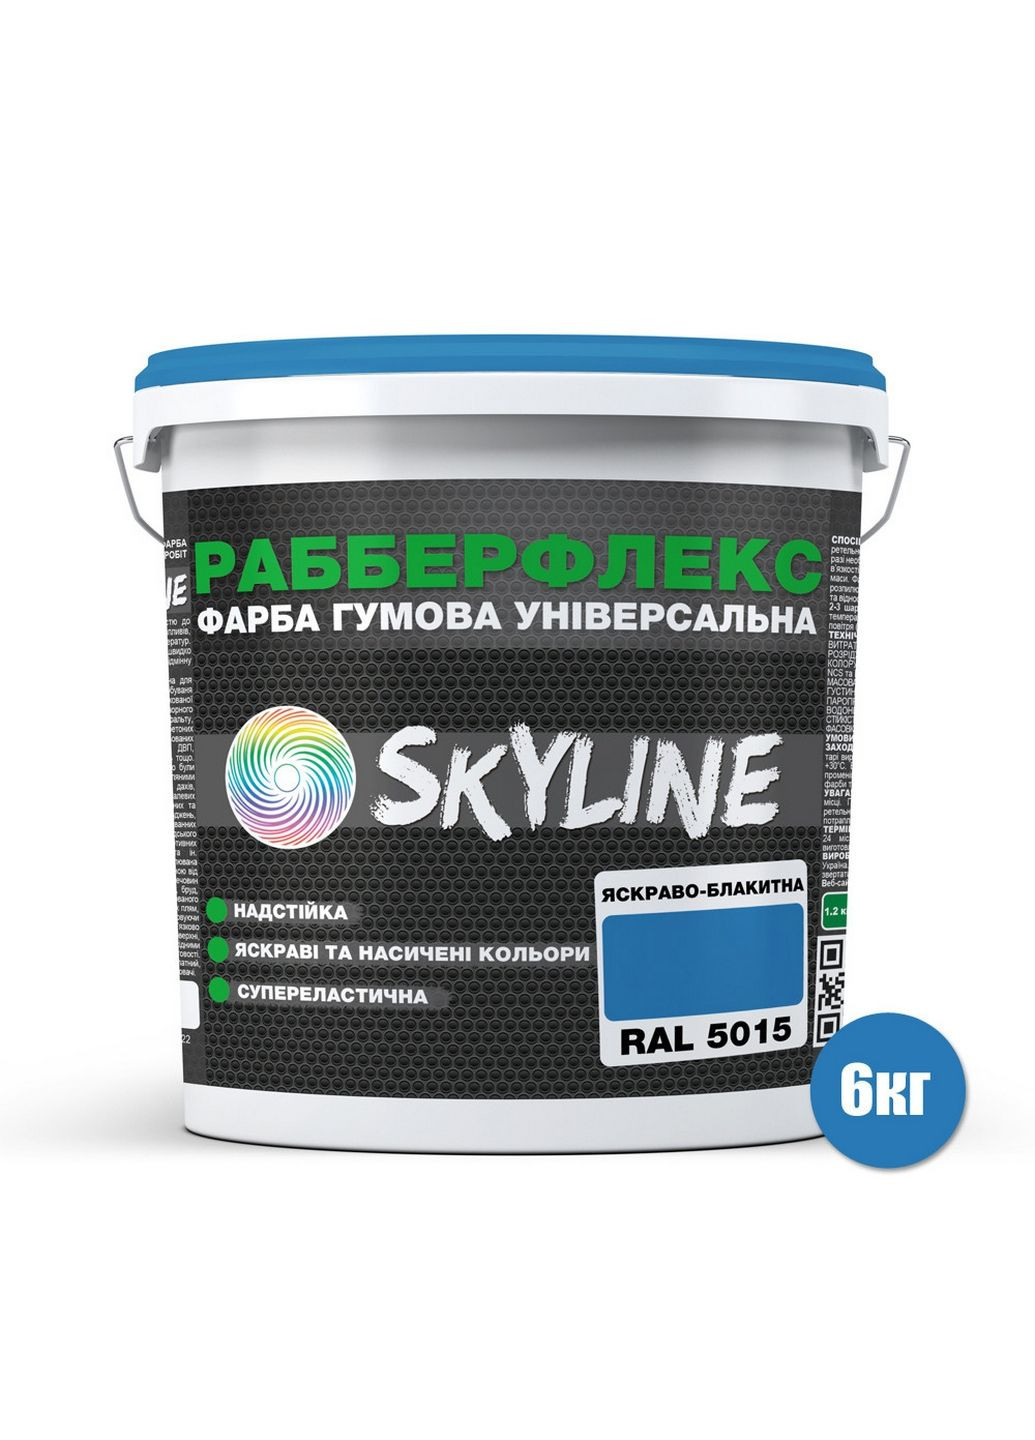 Надстійка фарба гумова супереластична «РабберФлекс» 6 кг SkyLine (289462252)